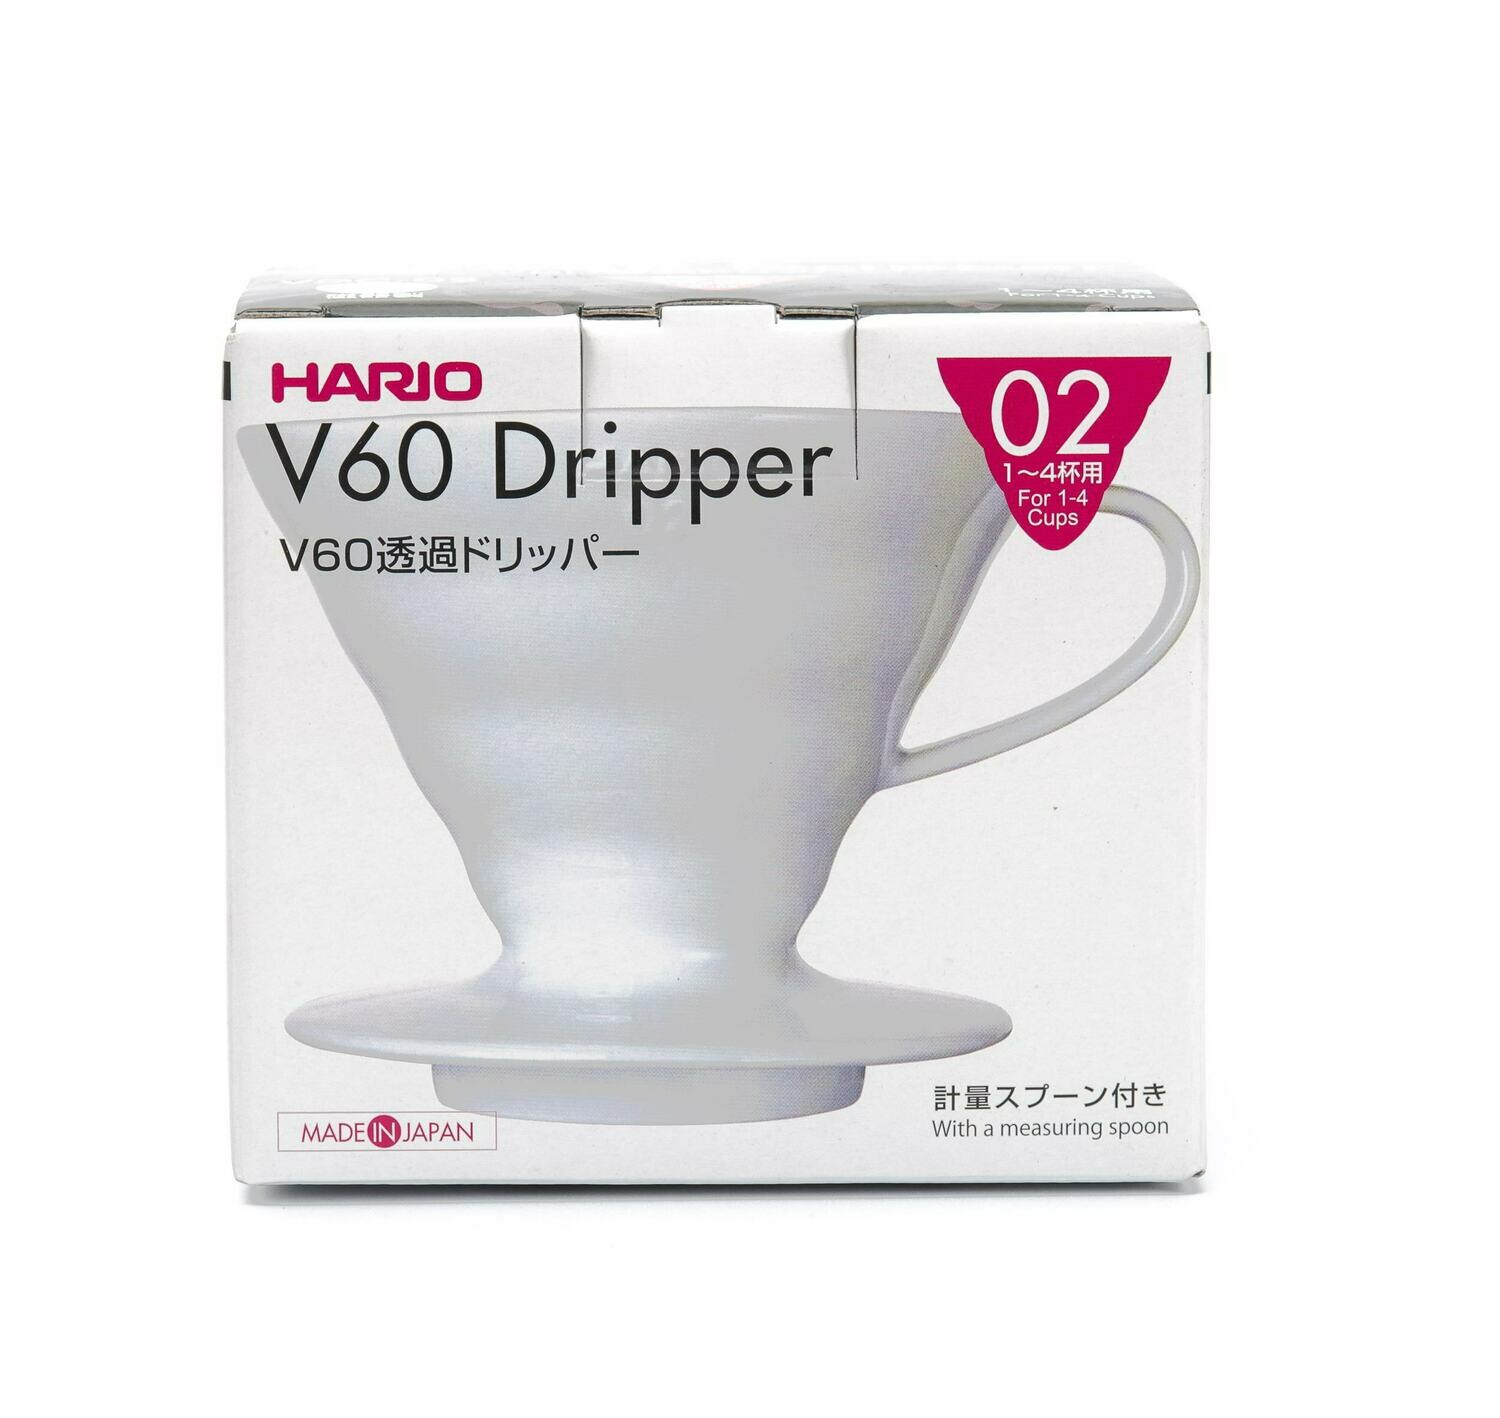 Dripper V60 Hario 02